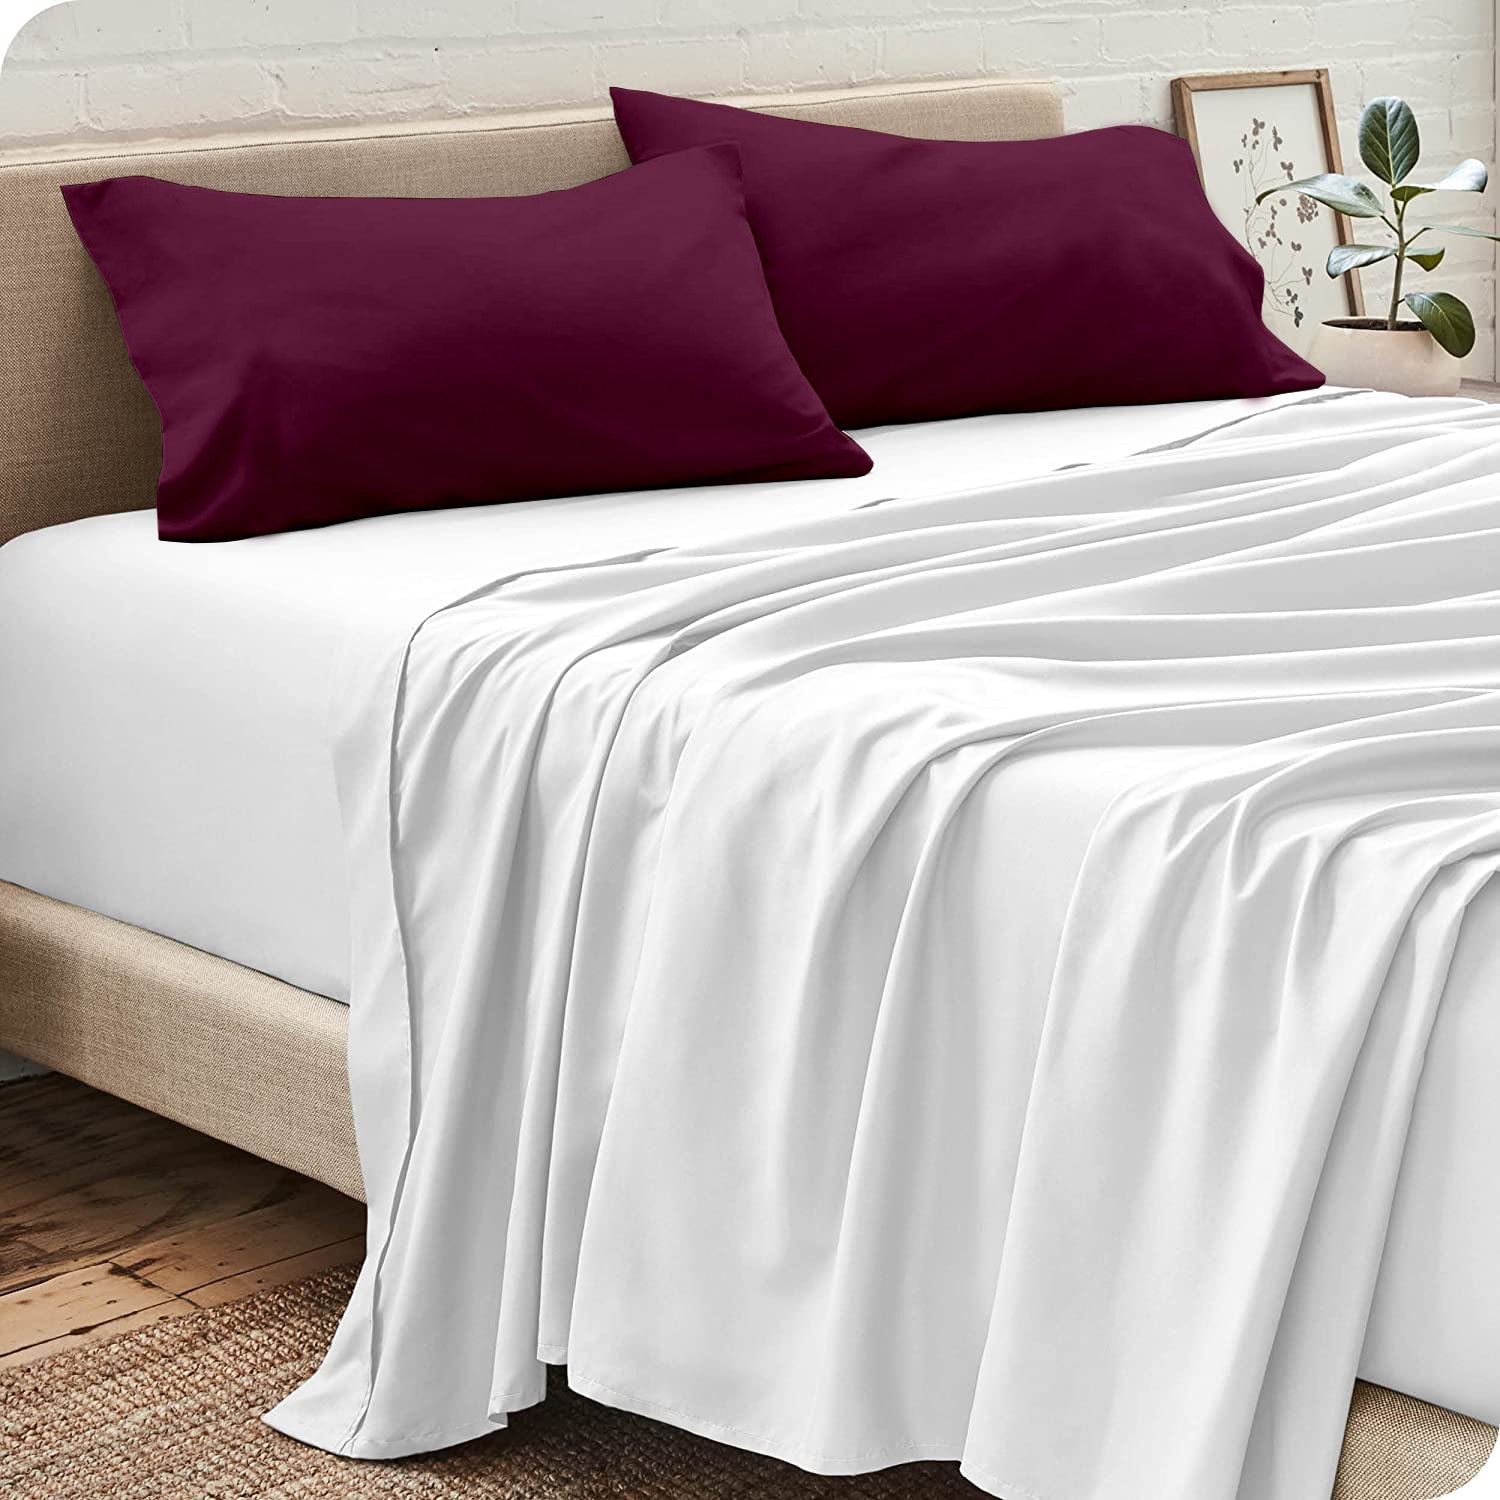 مجموعة أغطية السرير (غشاء سرير + غطاء + غشاء الوسادة)